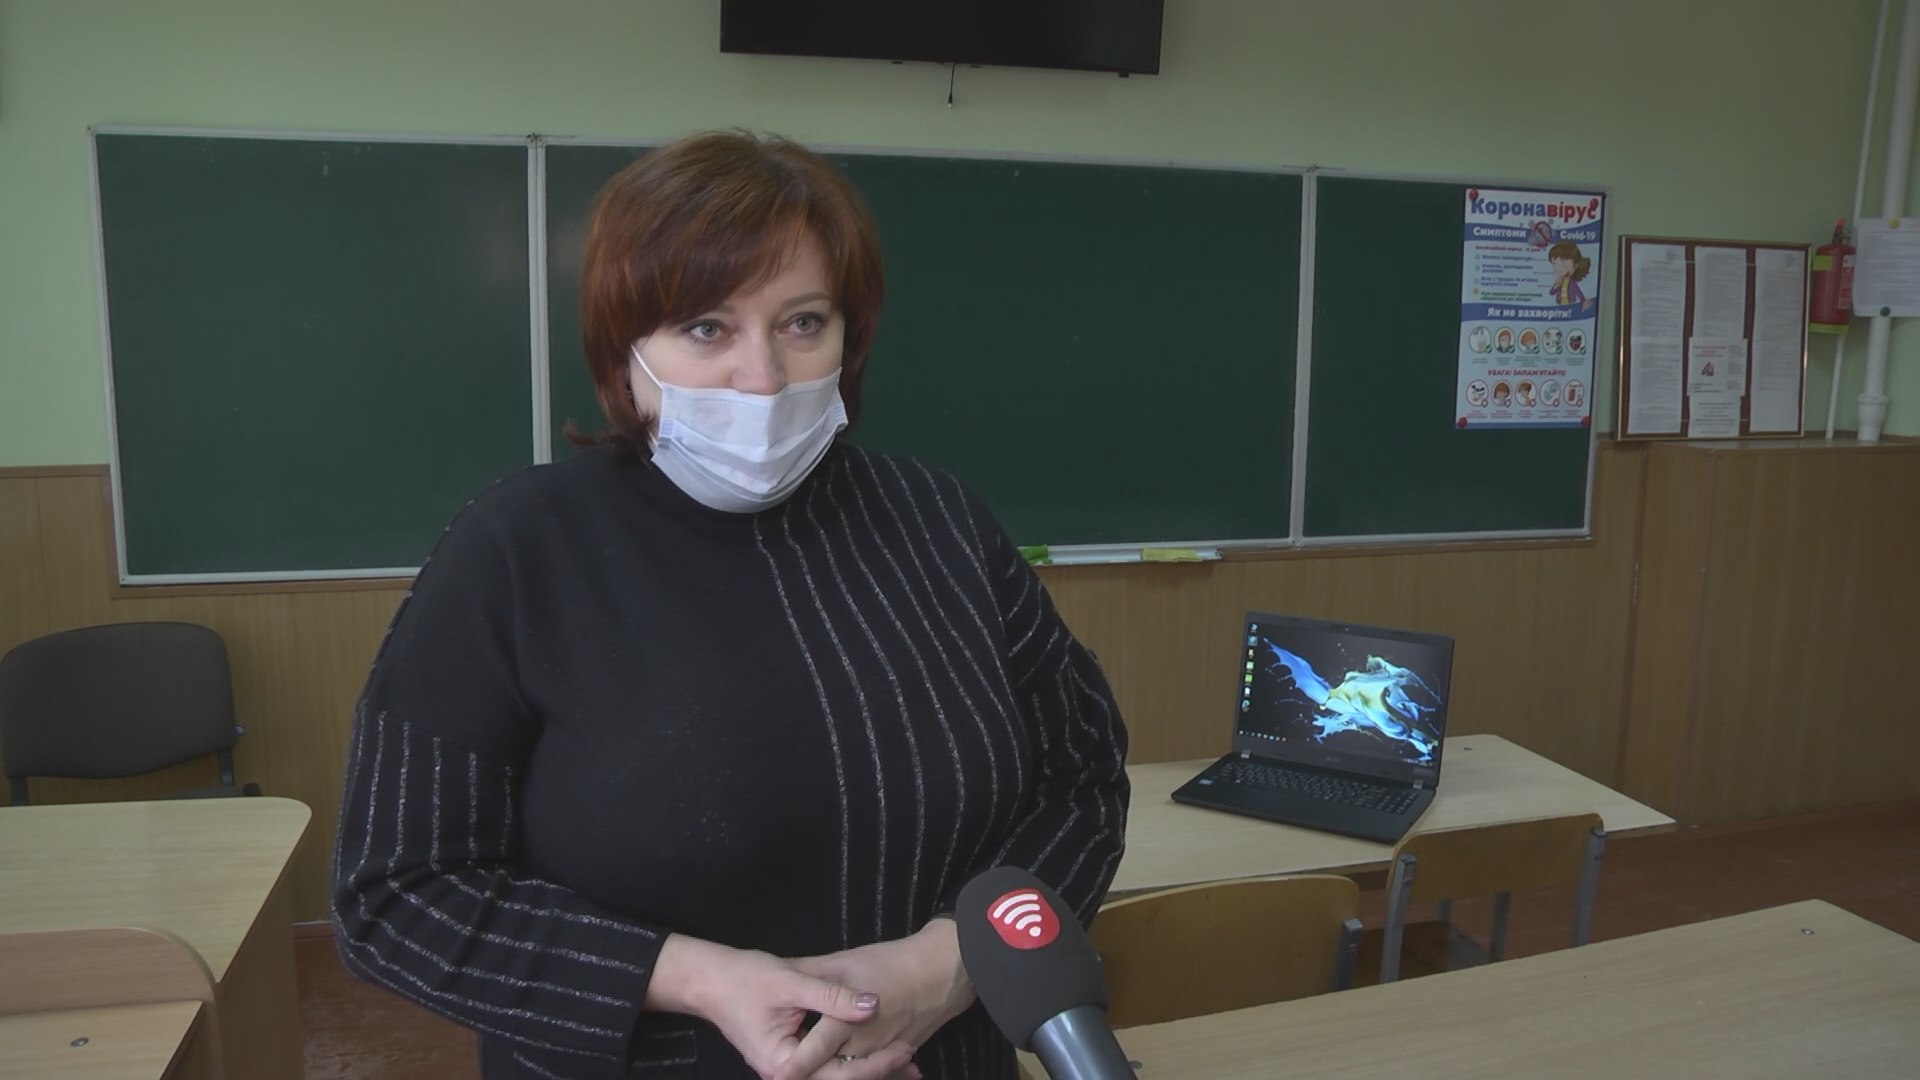 Міськрада закупила ноутбуки для шкіл: першу партію отримала школа №23